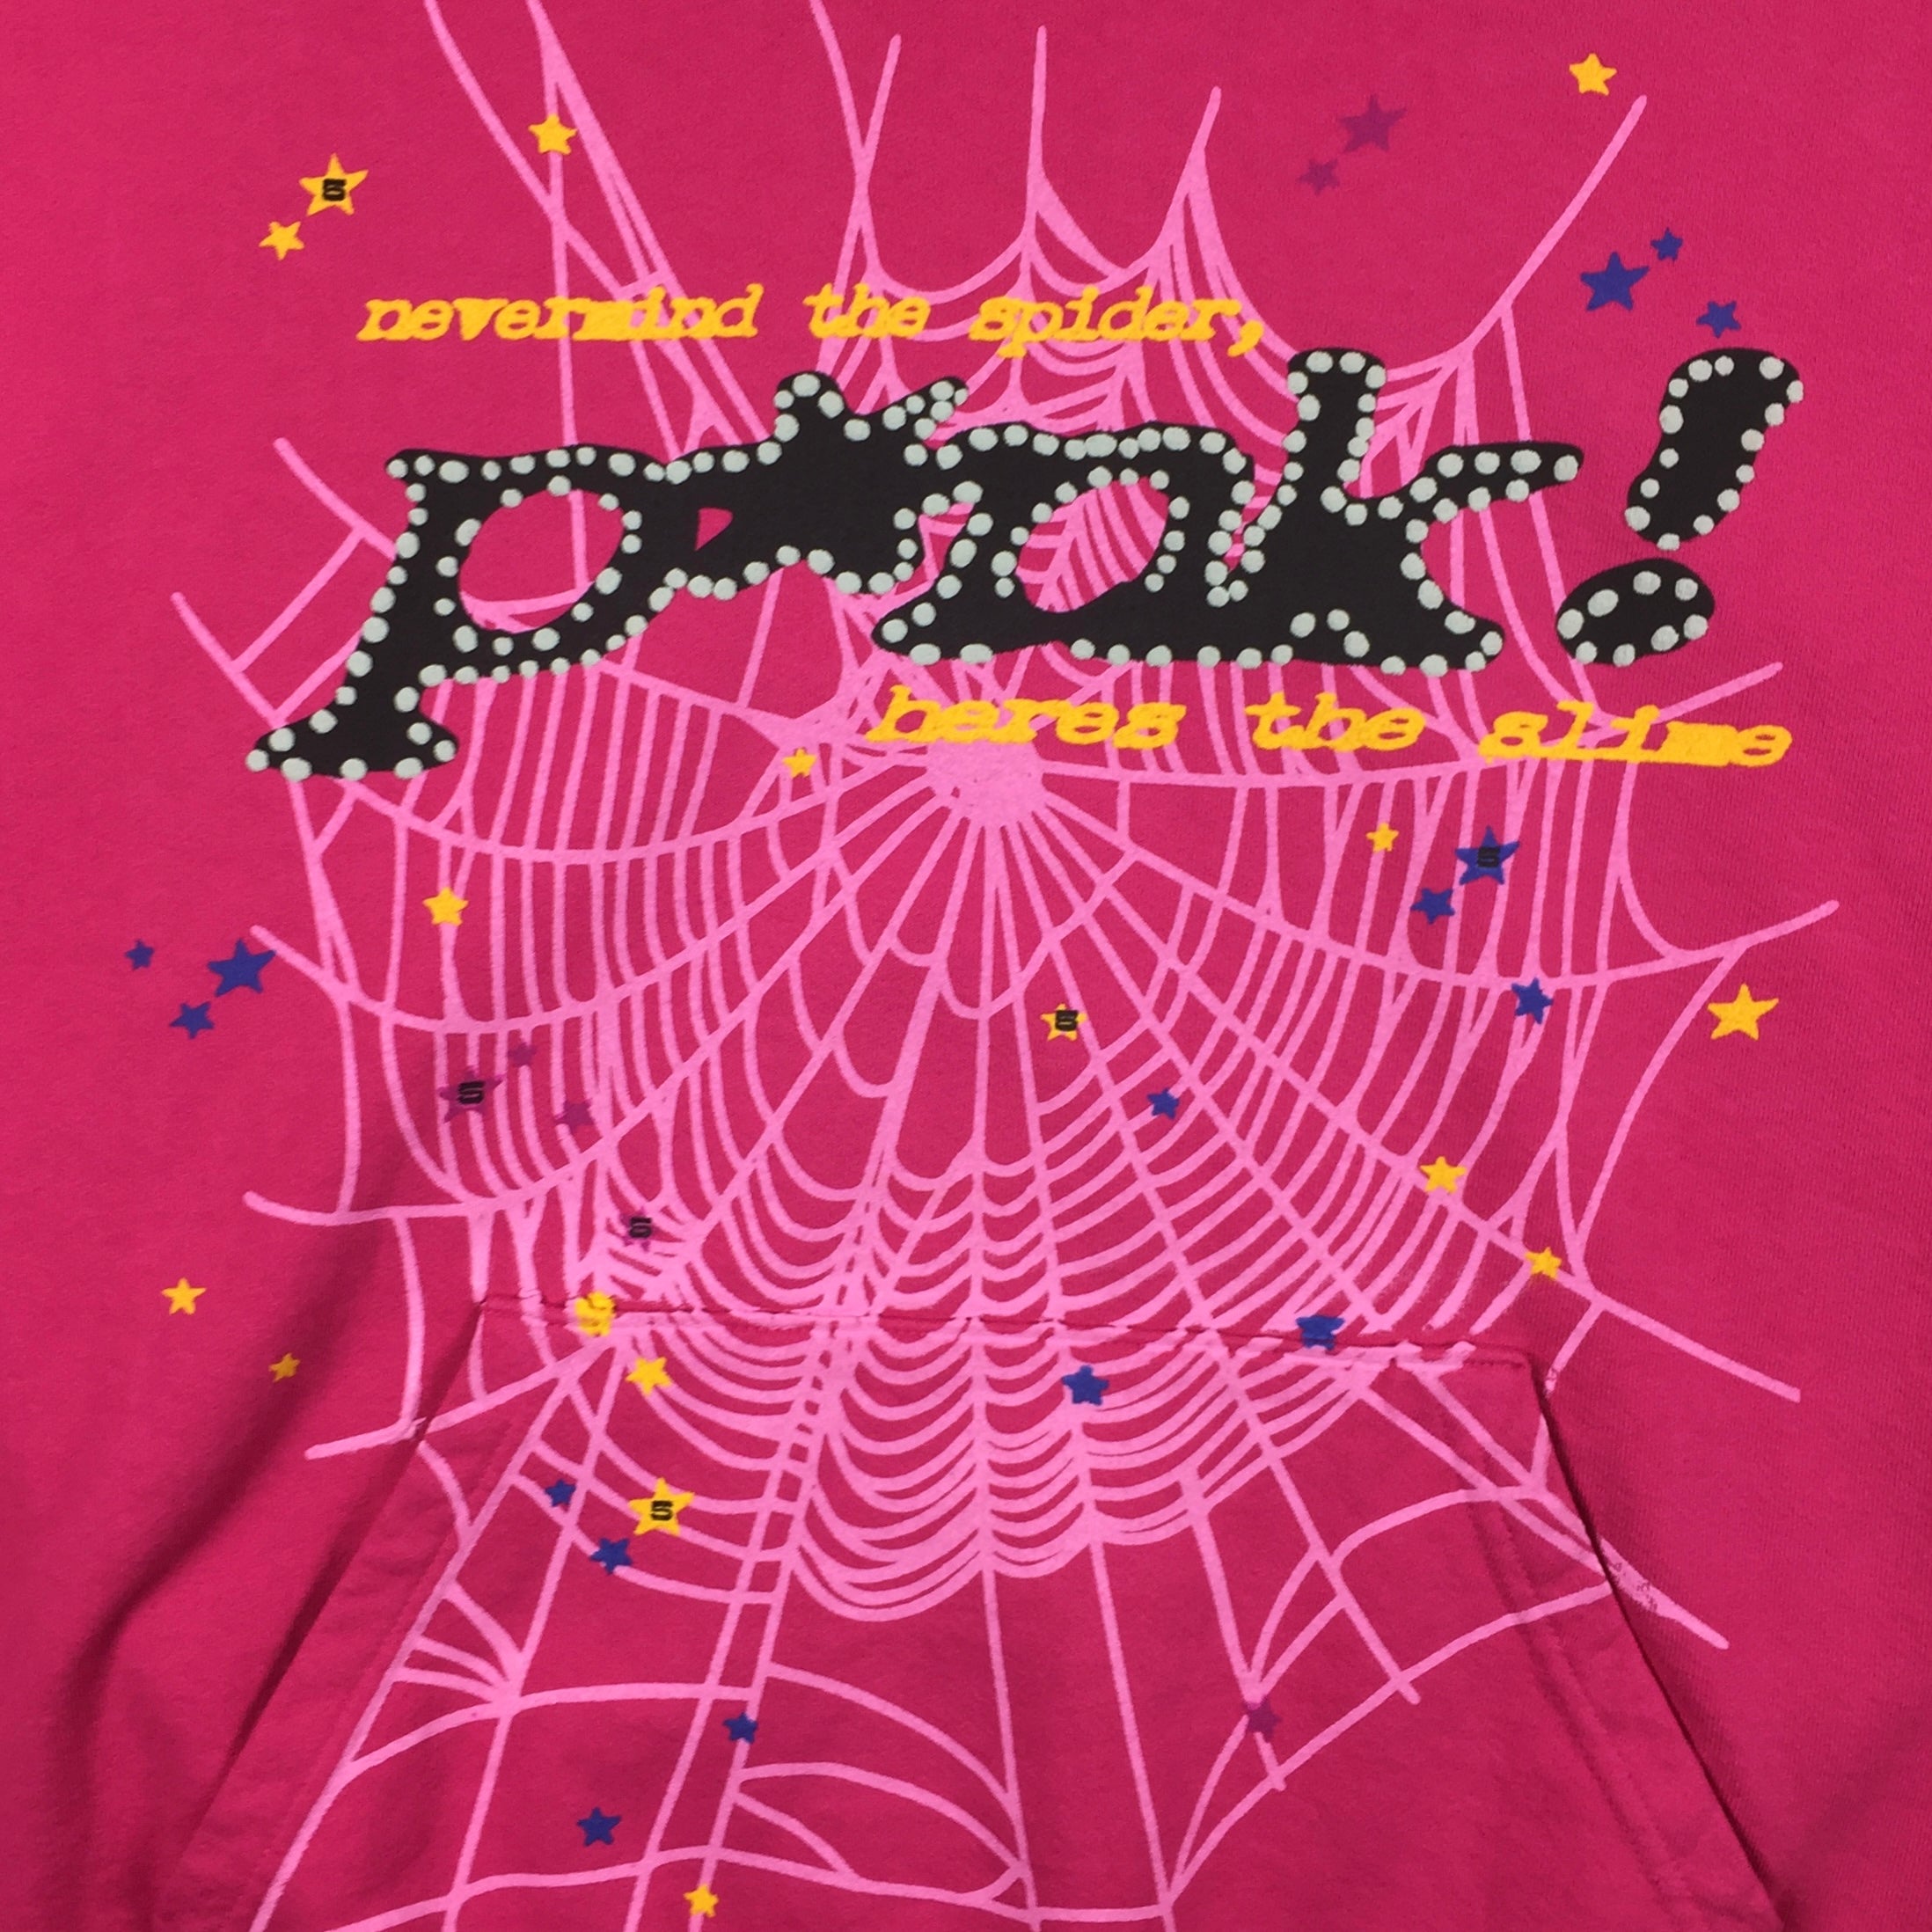 Spider Worldwide Punk Pink Hoodie